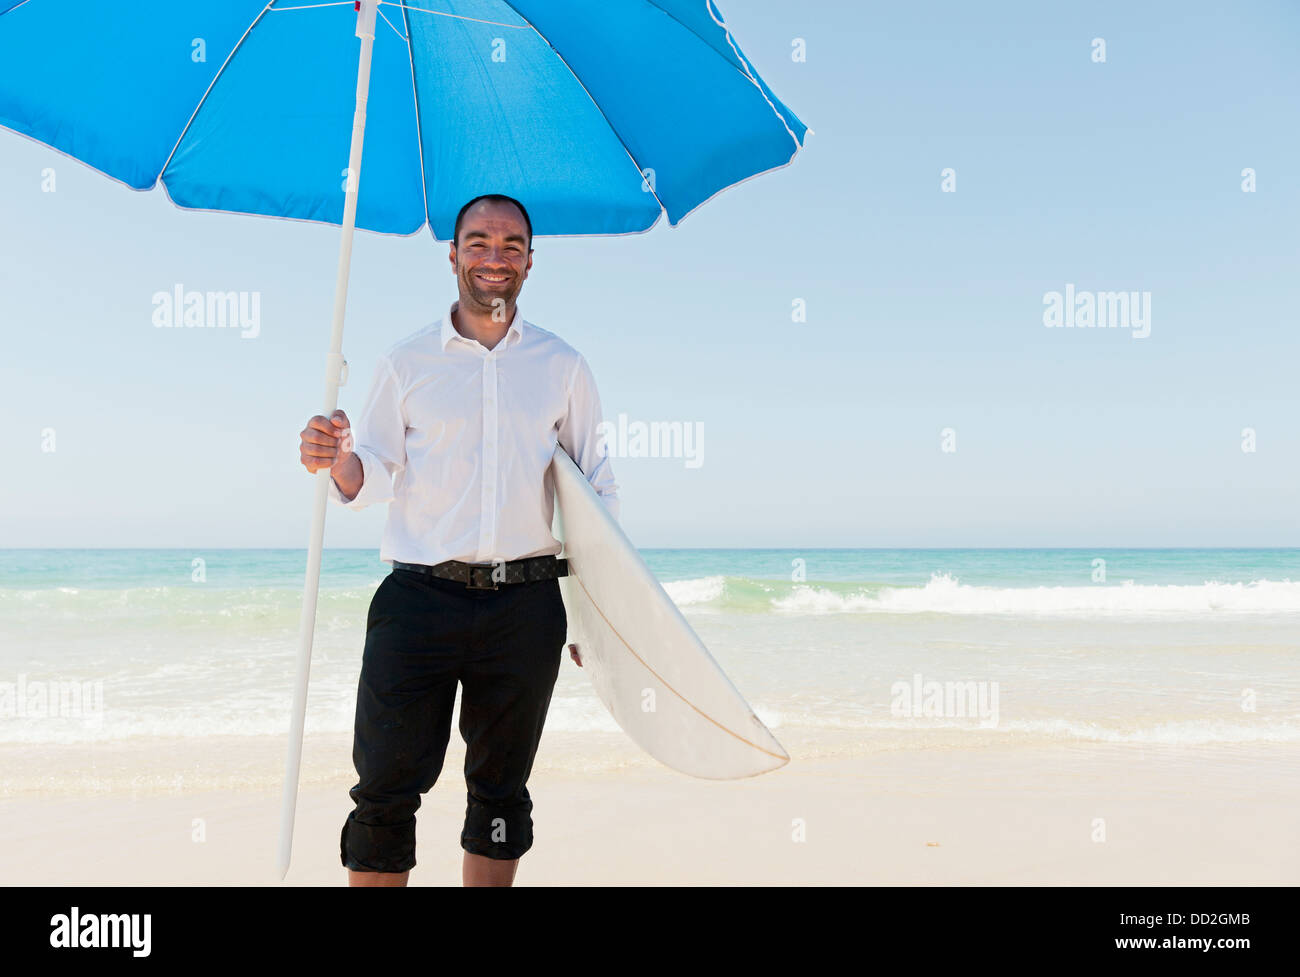 Un homme d'affaires sur la plage tenant un parapluie de plage et de surf ; Tarifa, Cadix, Andalousie, Espagne Banque D'Images